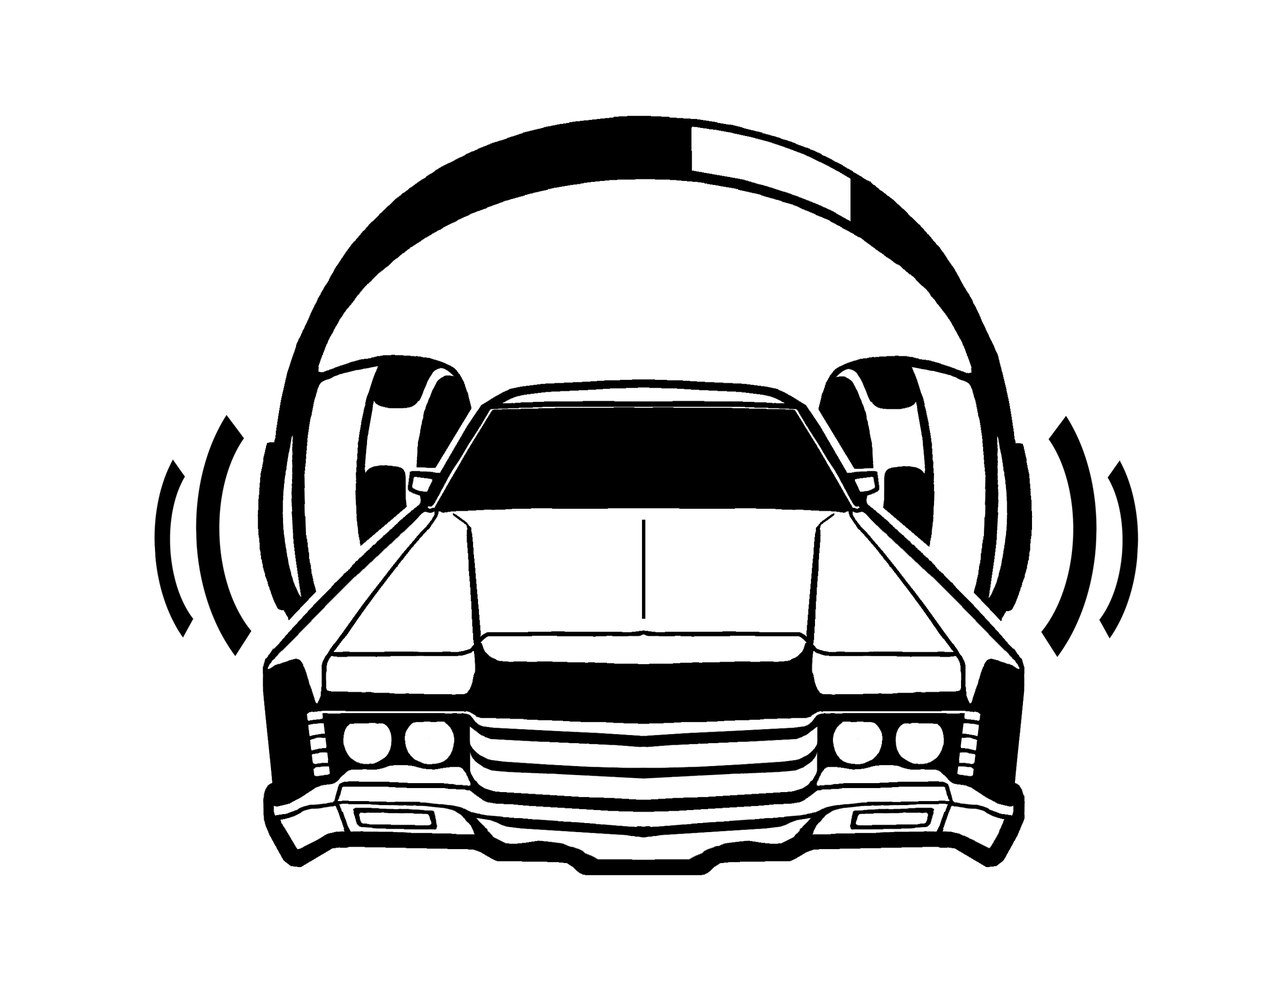 Логотипы машин